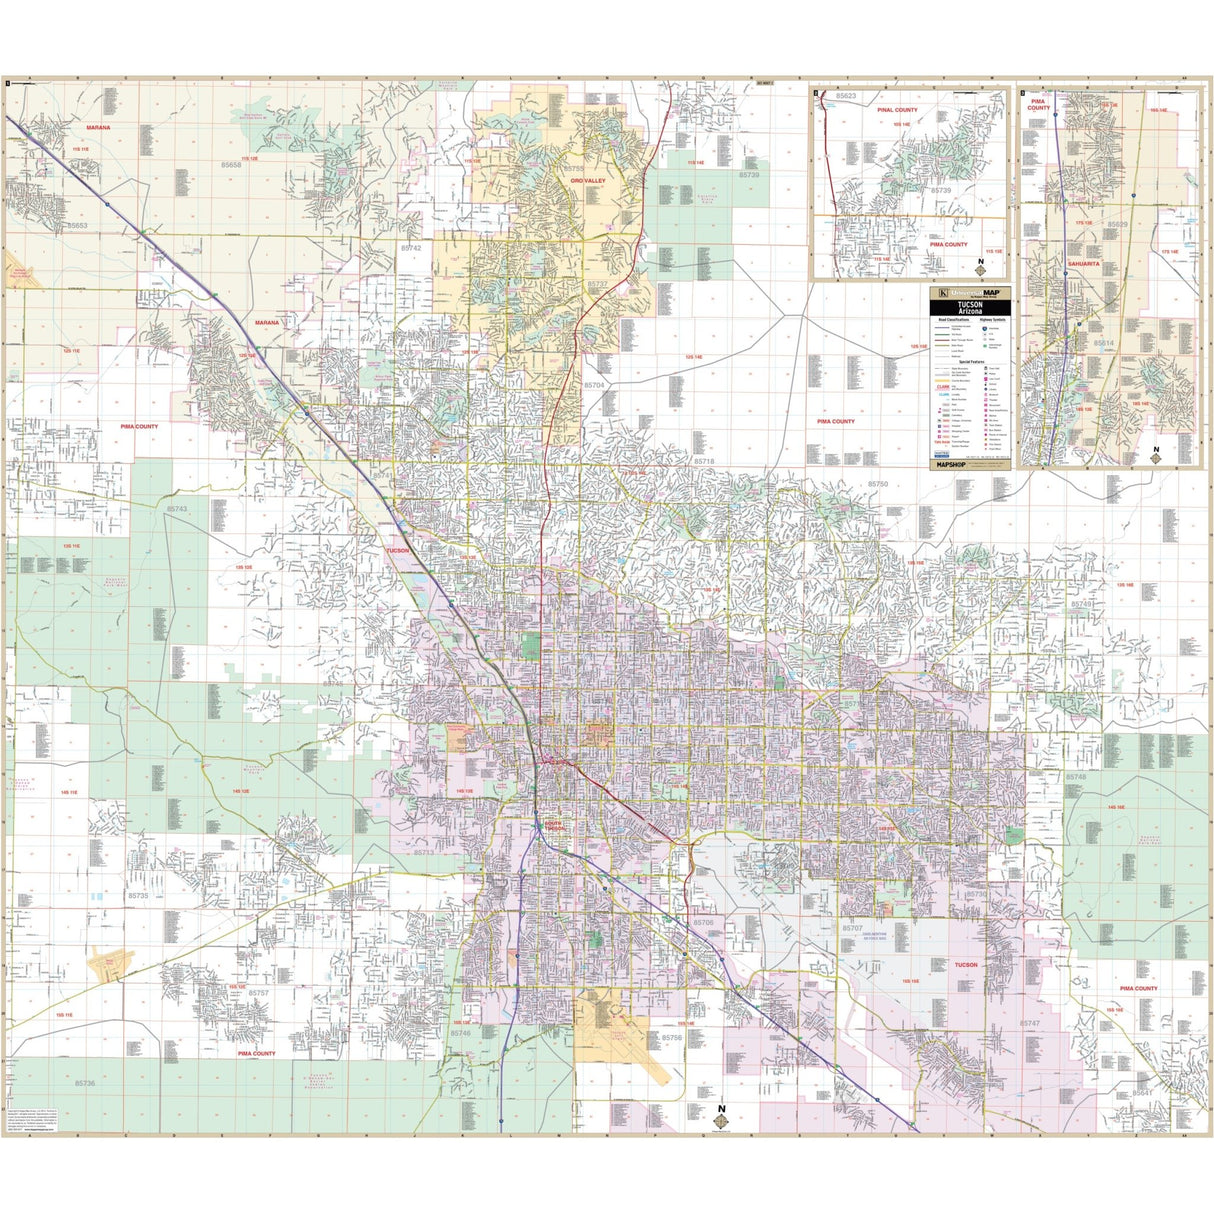 Tucson, AZ Wall Map - KA-C-AZ-TUCSON-PAPER - Ultimate Globes